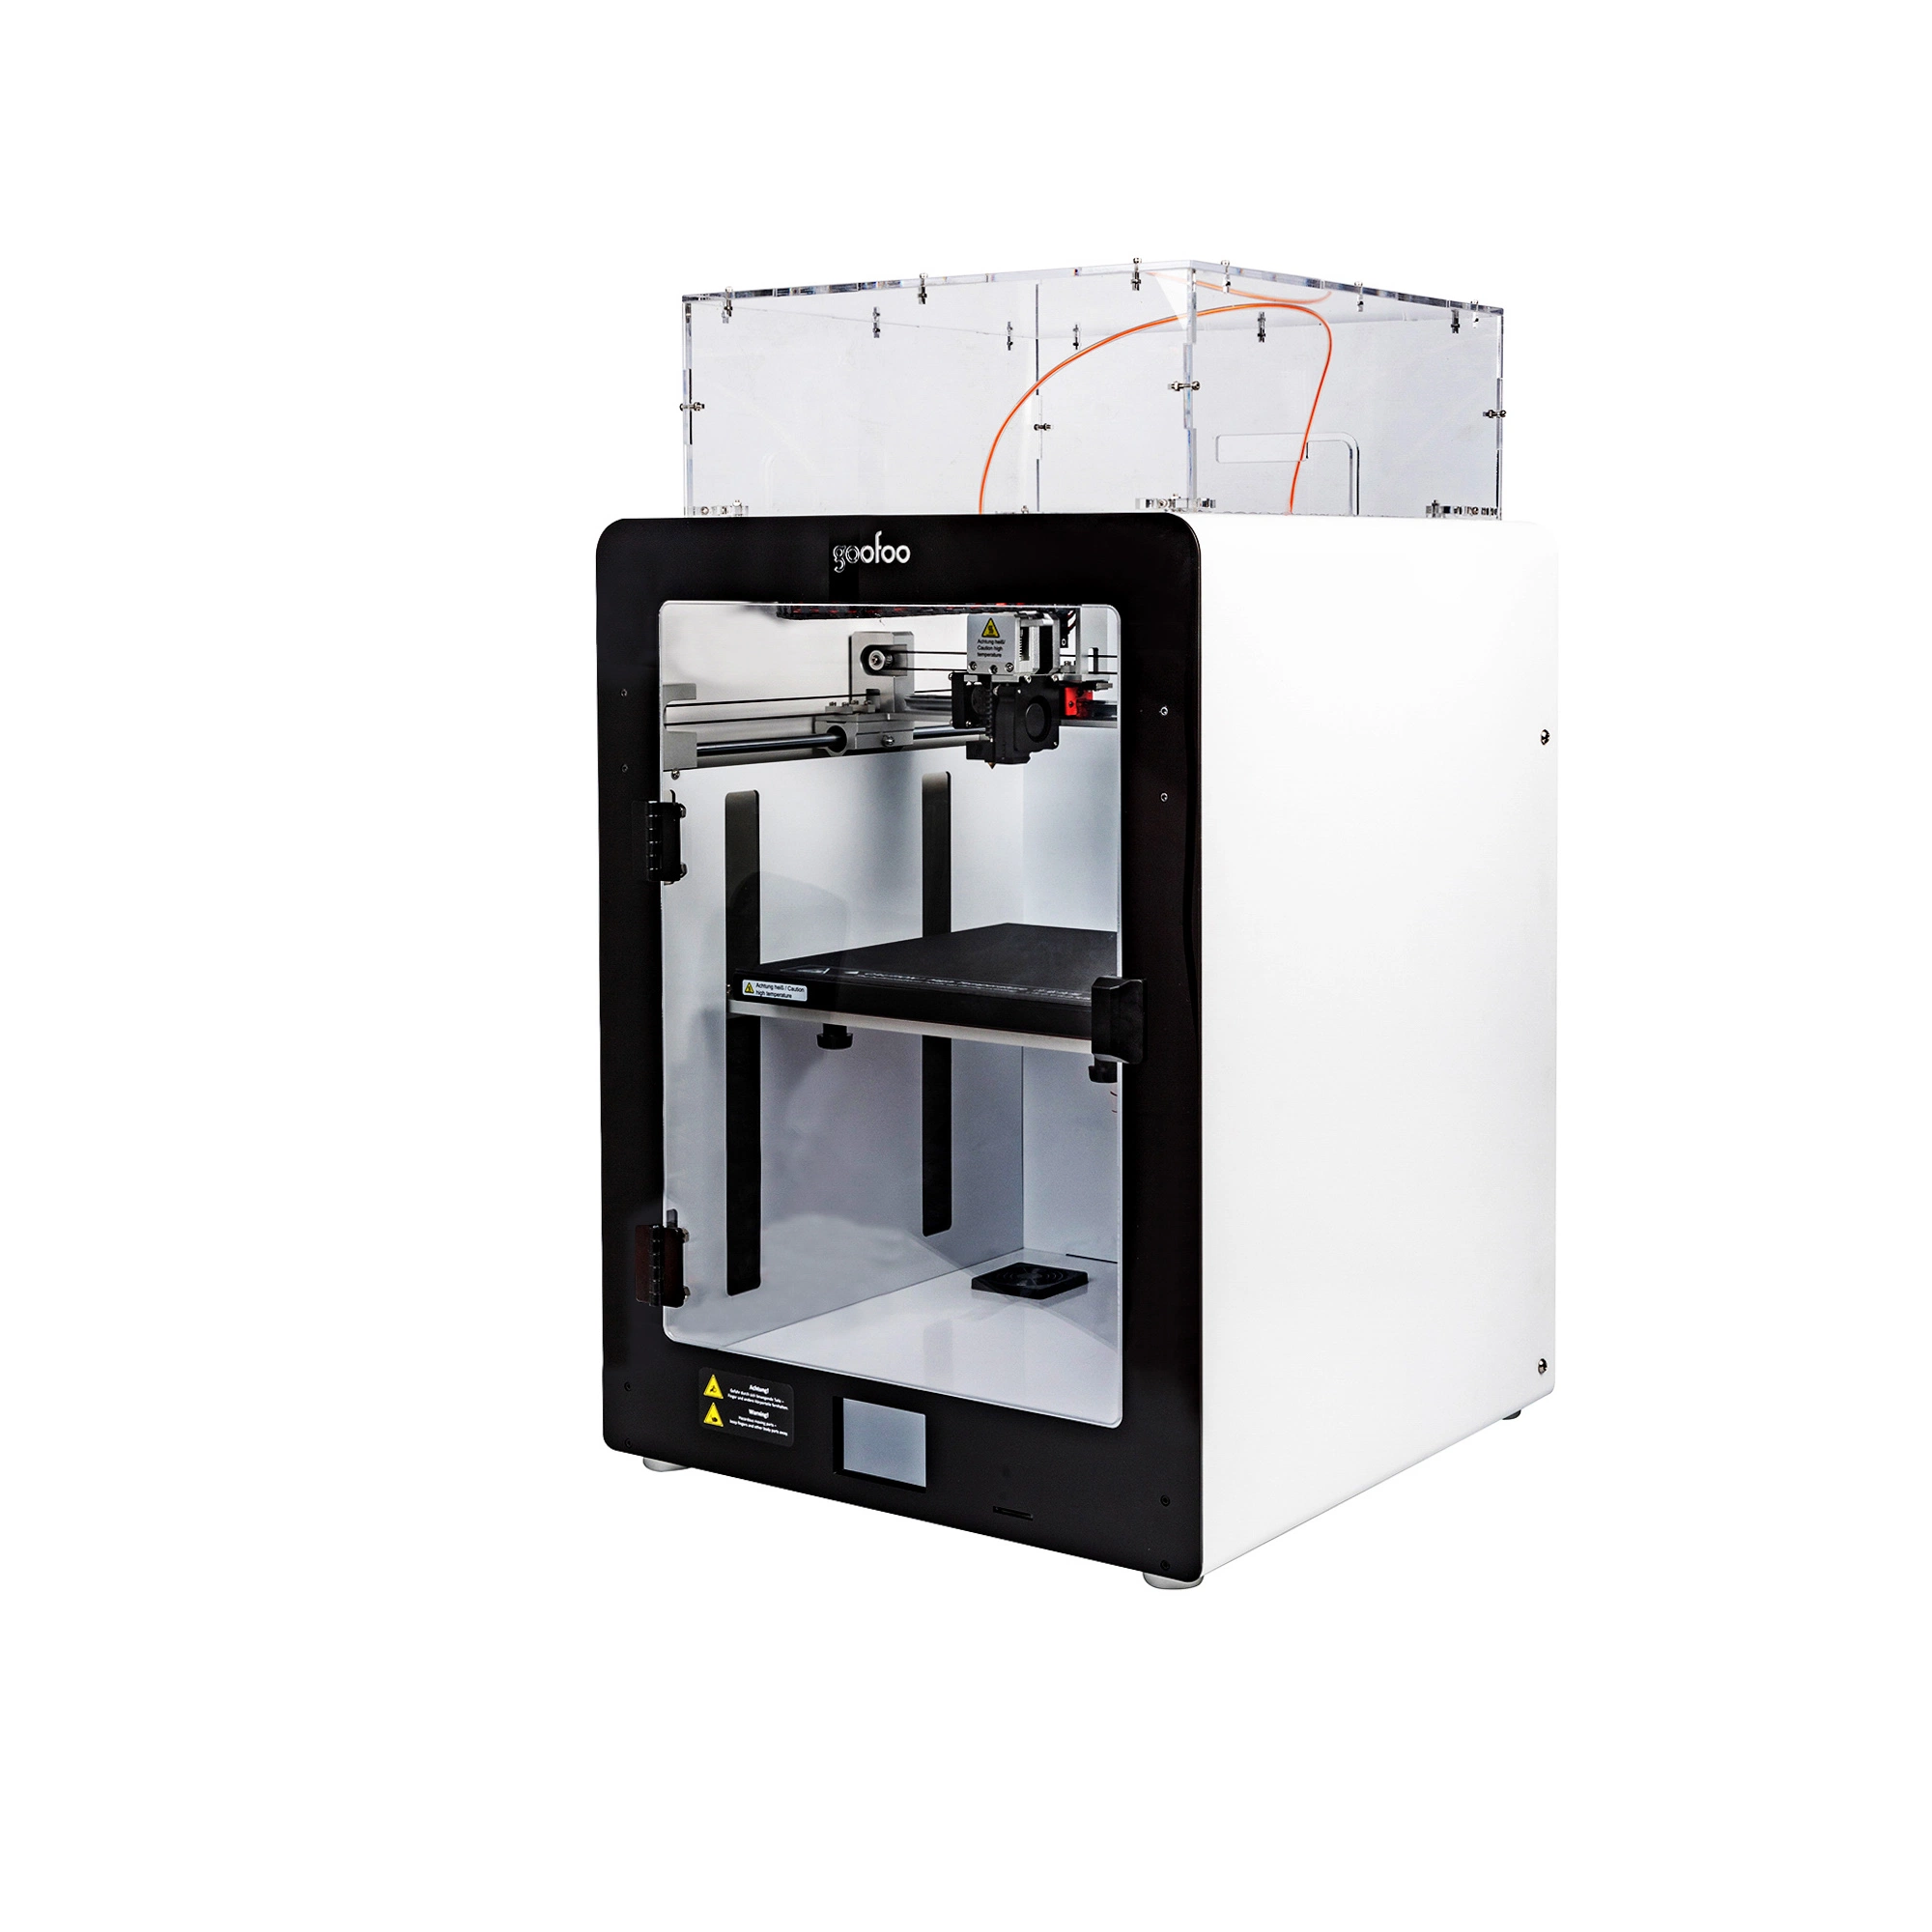 Rapid Prototyping Professional 3D impresora de gran volumen de construcción 280*280*300mm y estructura metálica resistente para imprimir con PLA, ABS, PETG, nylon, fibra de carbono